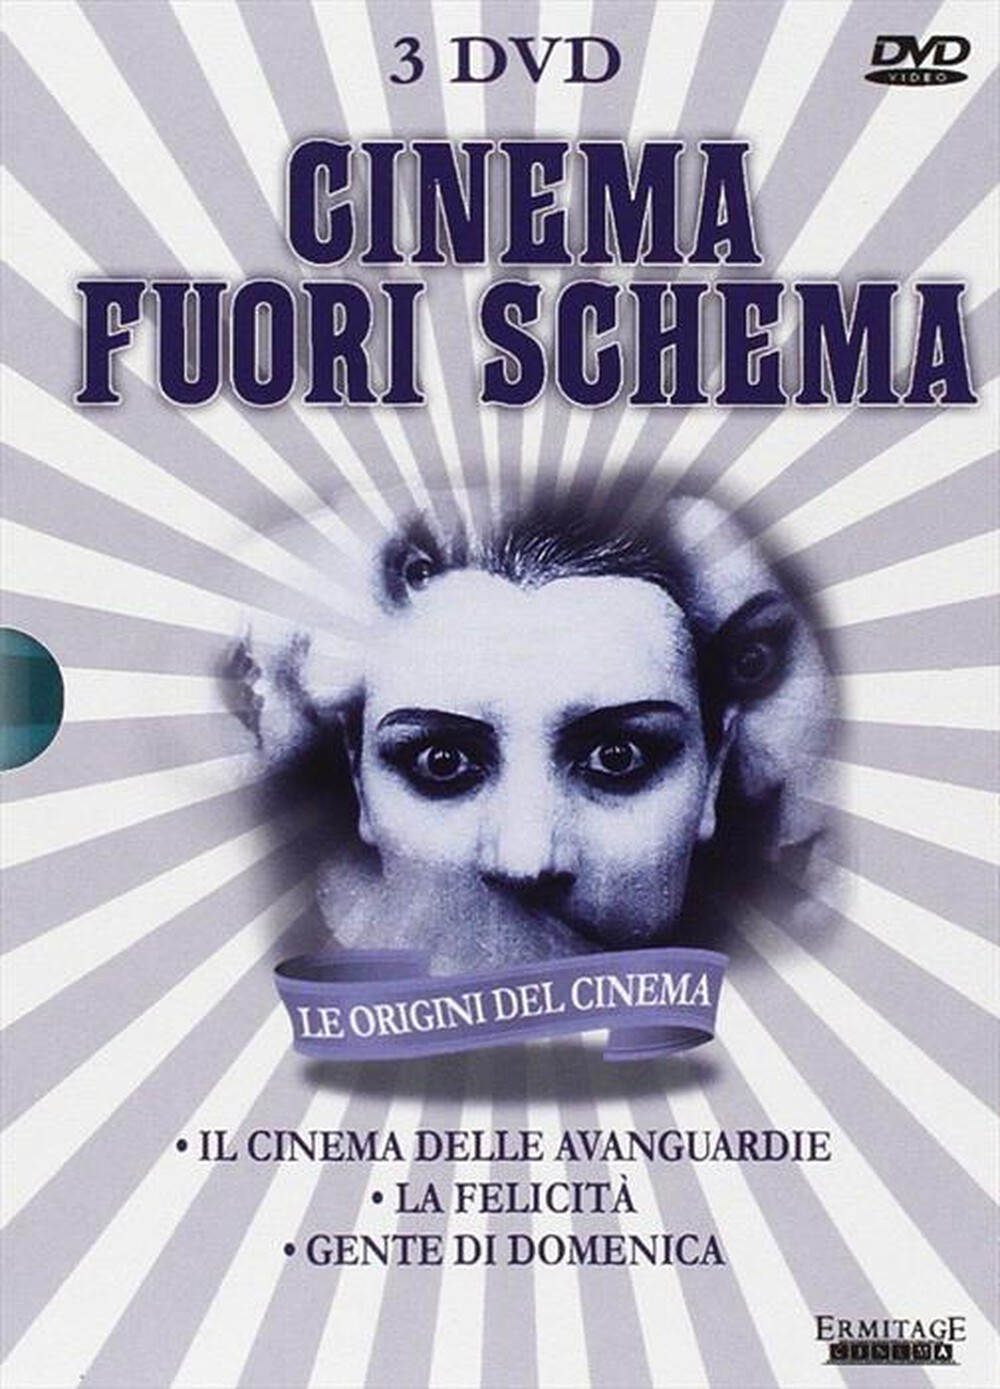 "ERMITAGE CINEMA - Cinema Fuori Schema (3 Dvd) - "